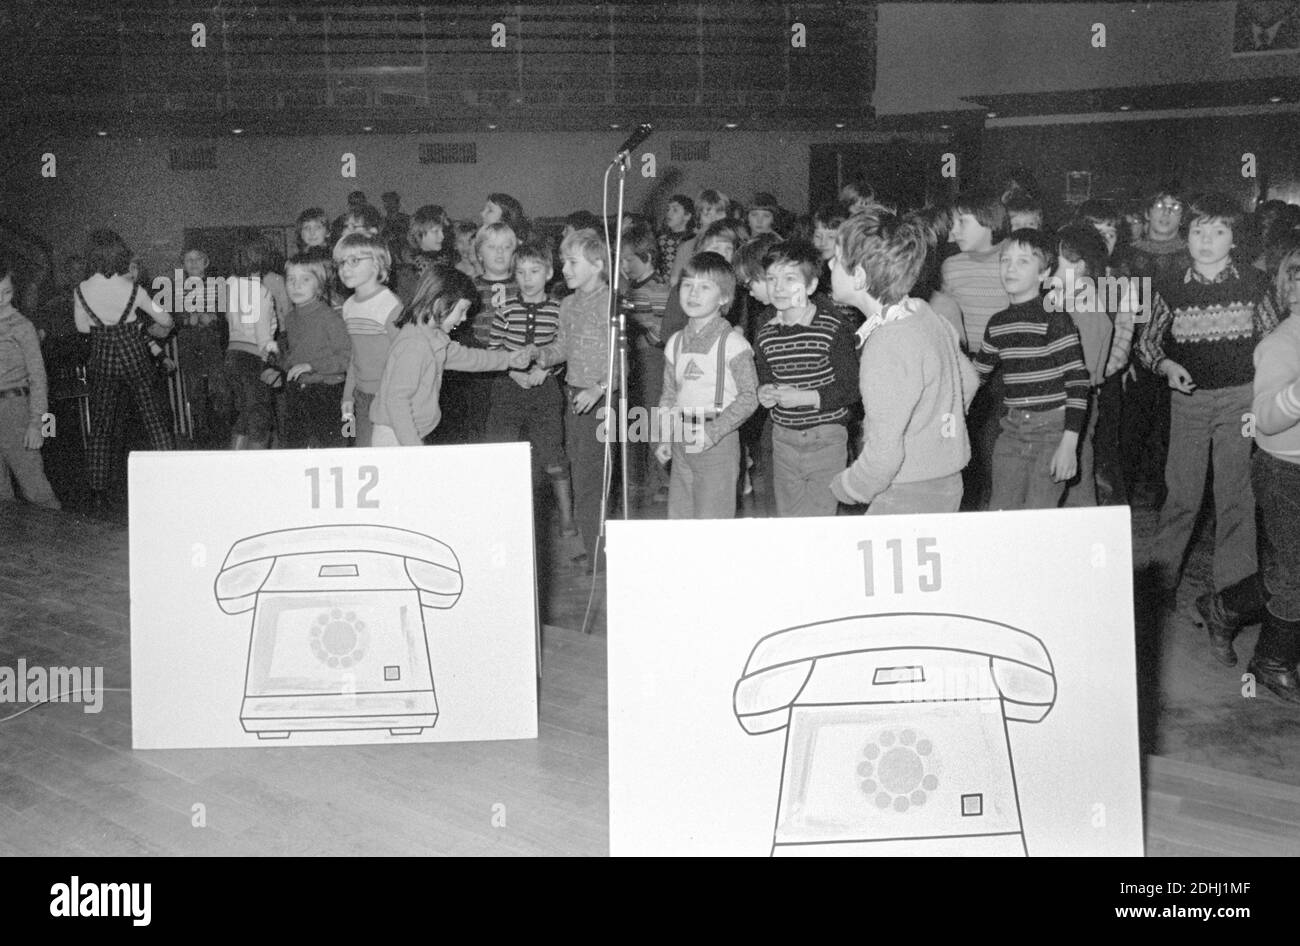 30 novembre 1983, Sassonia, Eilenburg: A metà degli anni '80, una discoteca sul traffico a Eilenburg ha familiarizzato gli scolari e gli asili con le norme della strada e le norme di sicurezza, ad esempio per le biciclette. Data esatta della registrazione non nota. Foto: Volkmar Heinz/dpa-Zentralbild/ZB Foto Stock